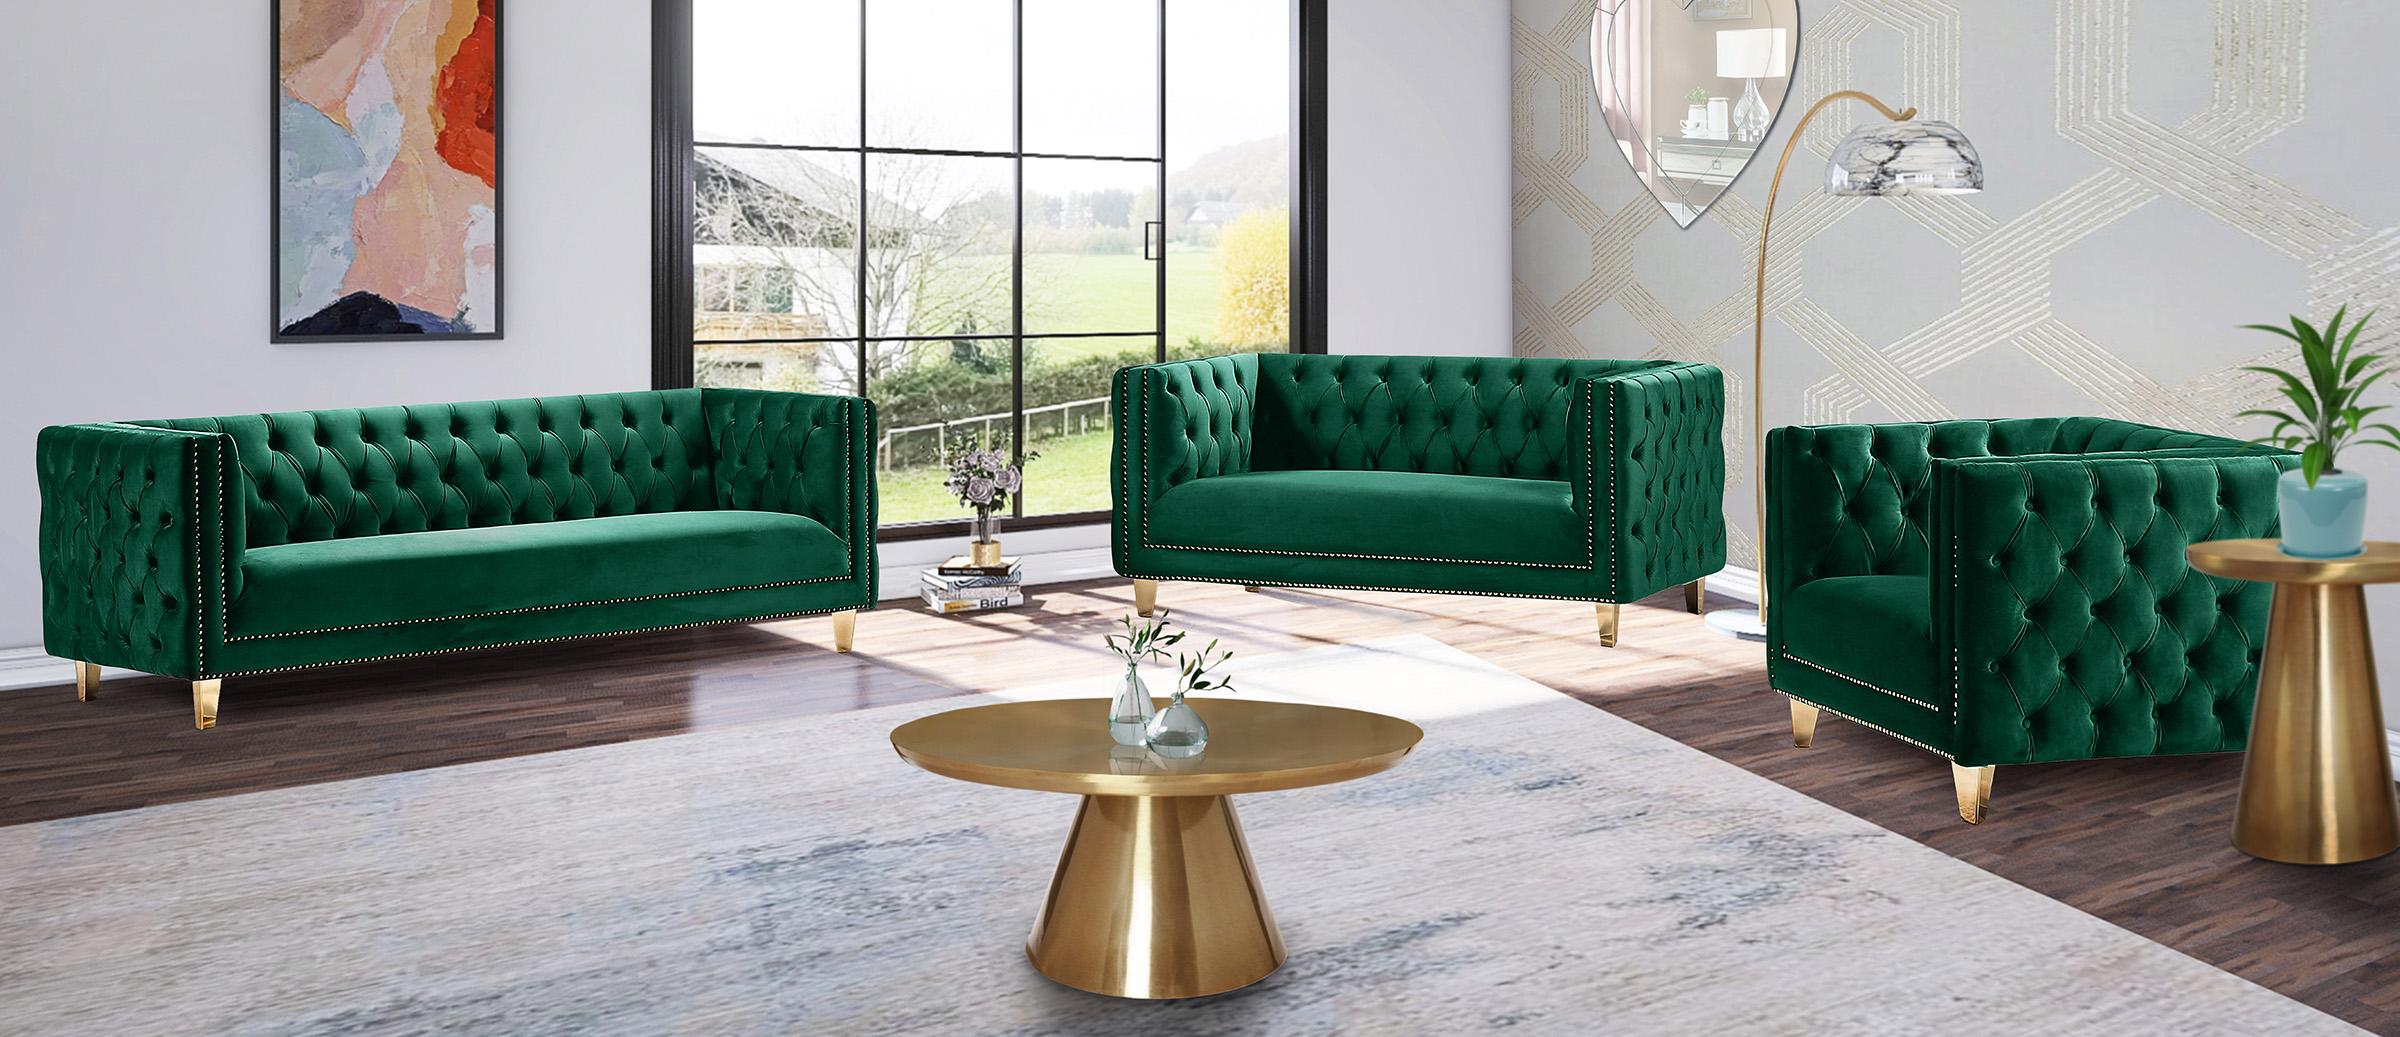 

    
652Green-S Glam Green Velvet Sofa MICHELLE 652Green-S Meridian Contemporary Modern
